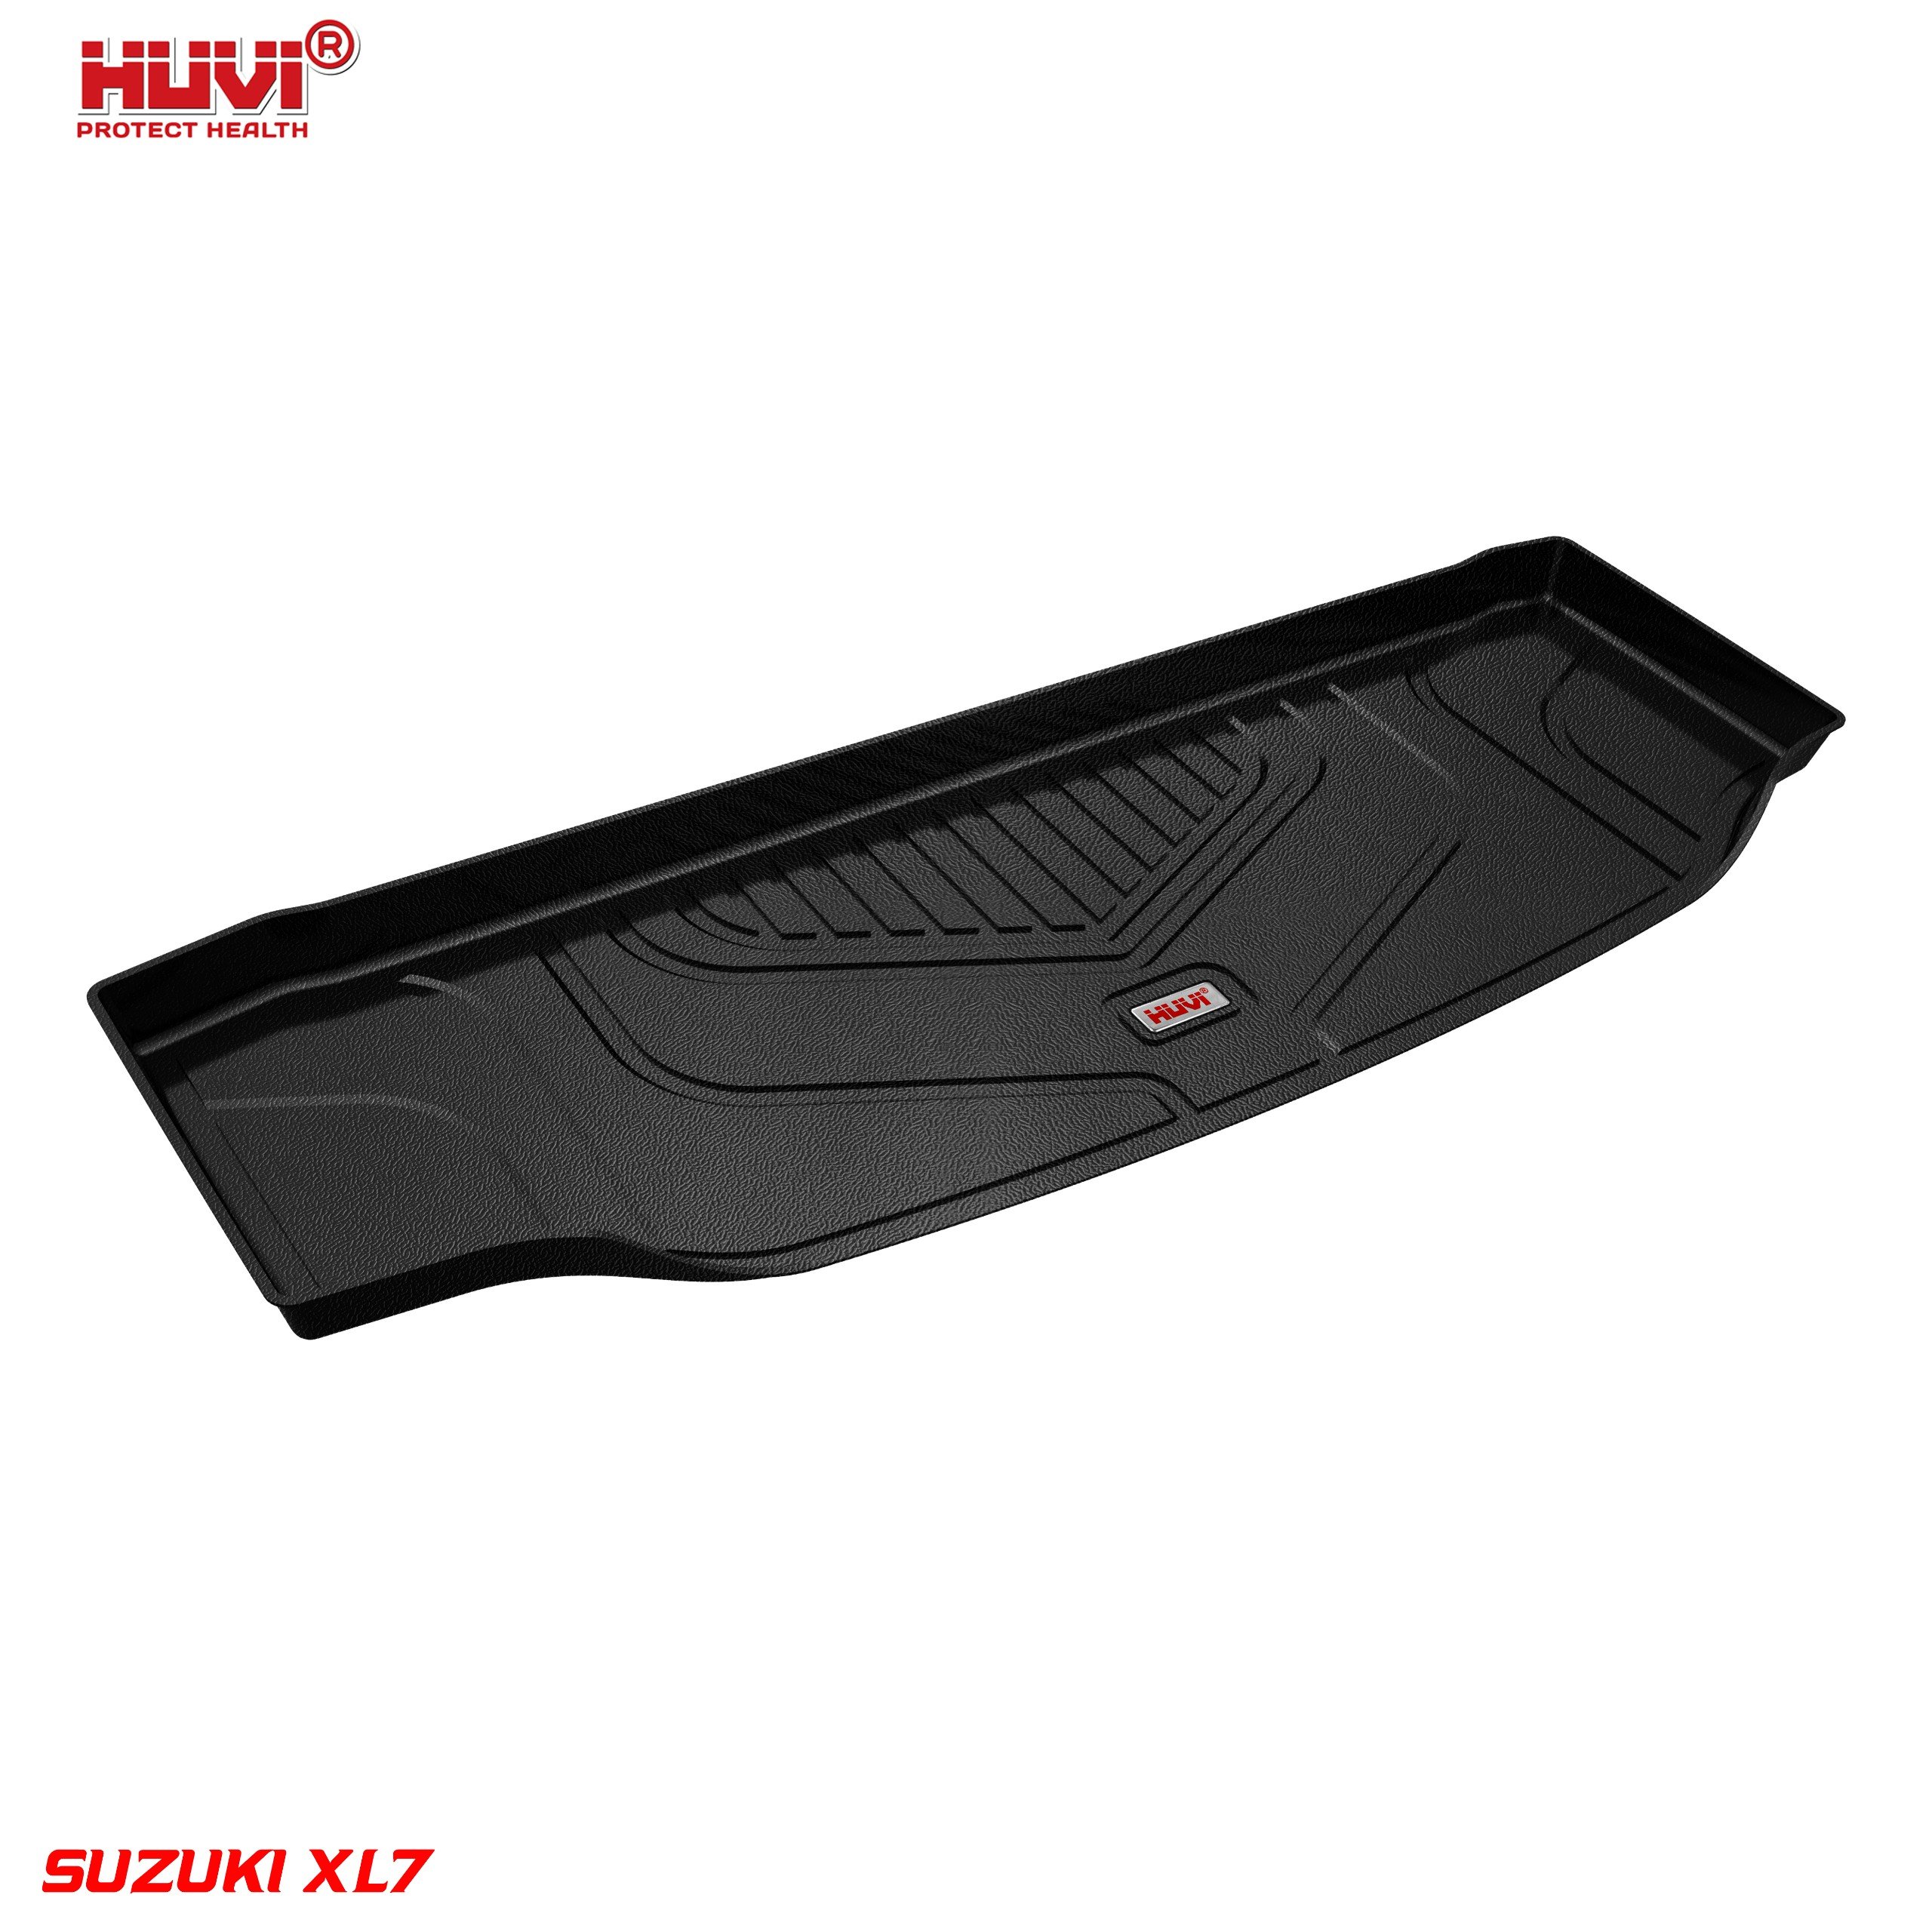 Thảm lót sàn ô tô Suzuki XL7 bảo hành 1 đổi 1 trong vòng 2 năm.